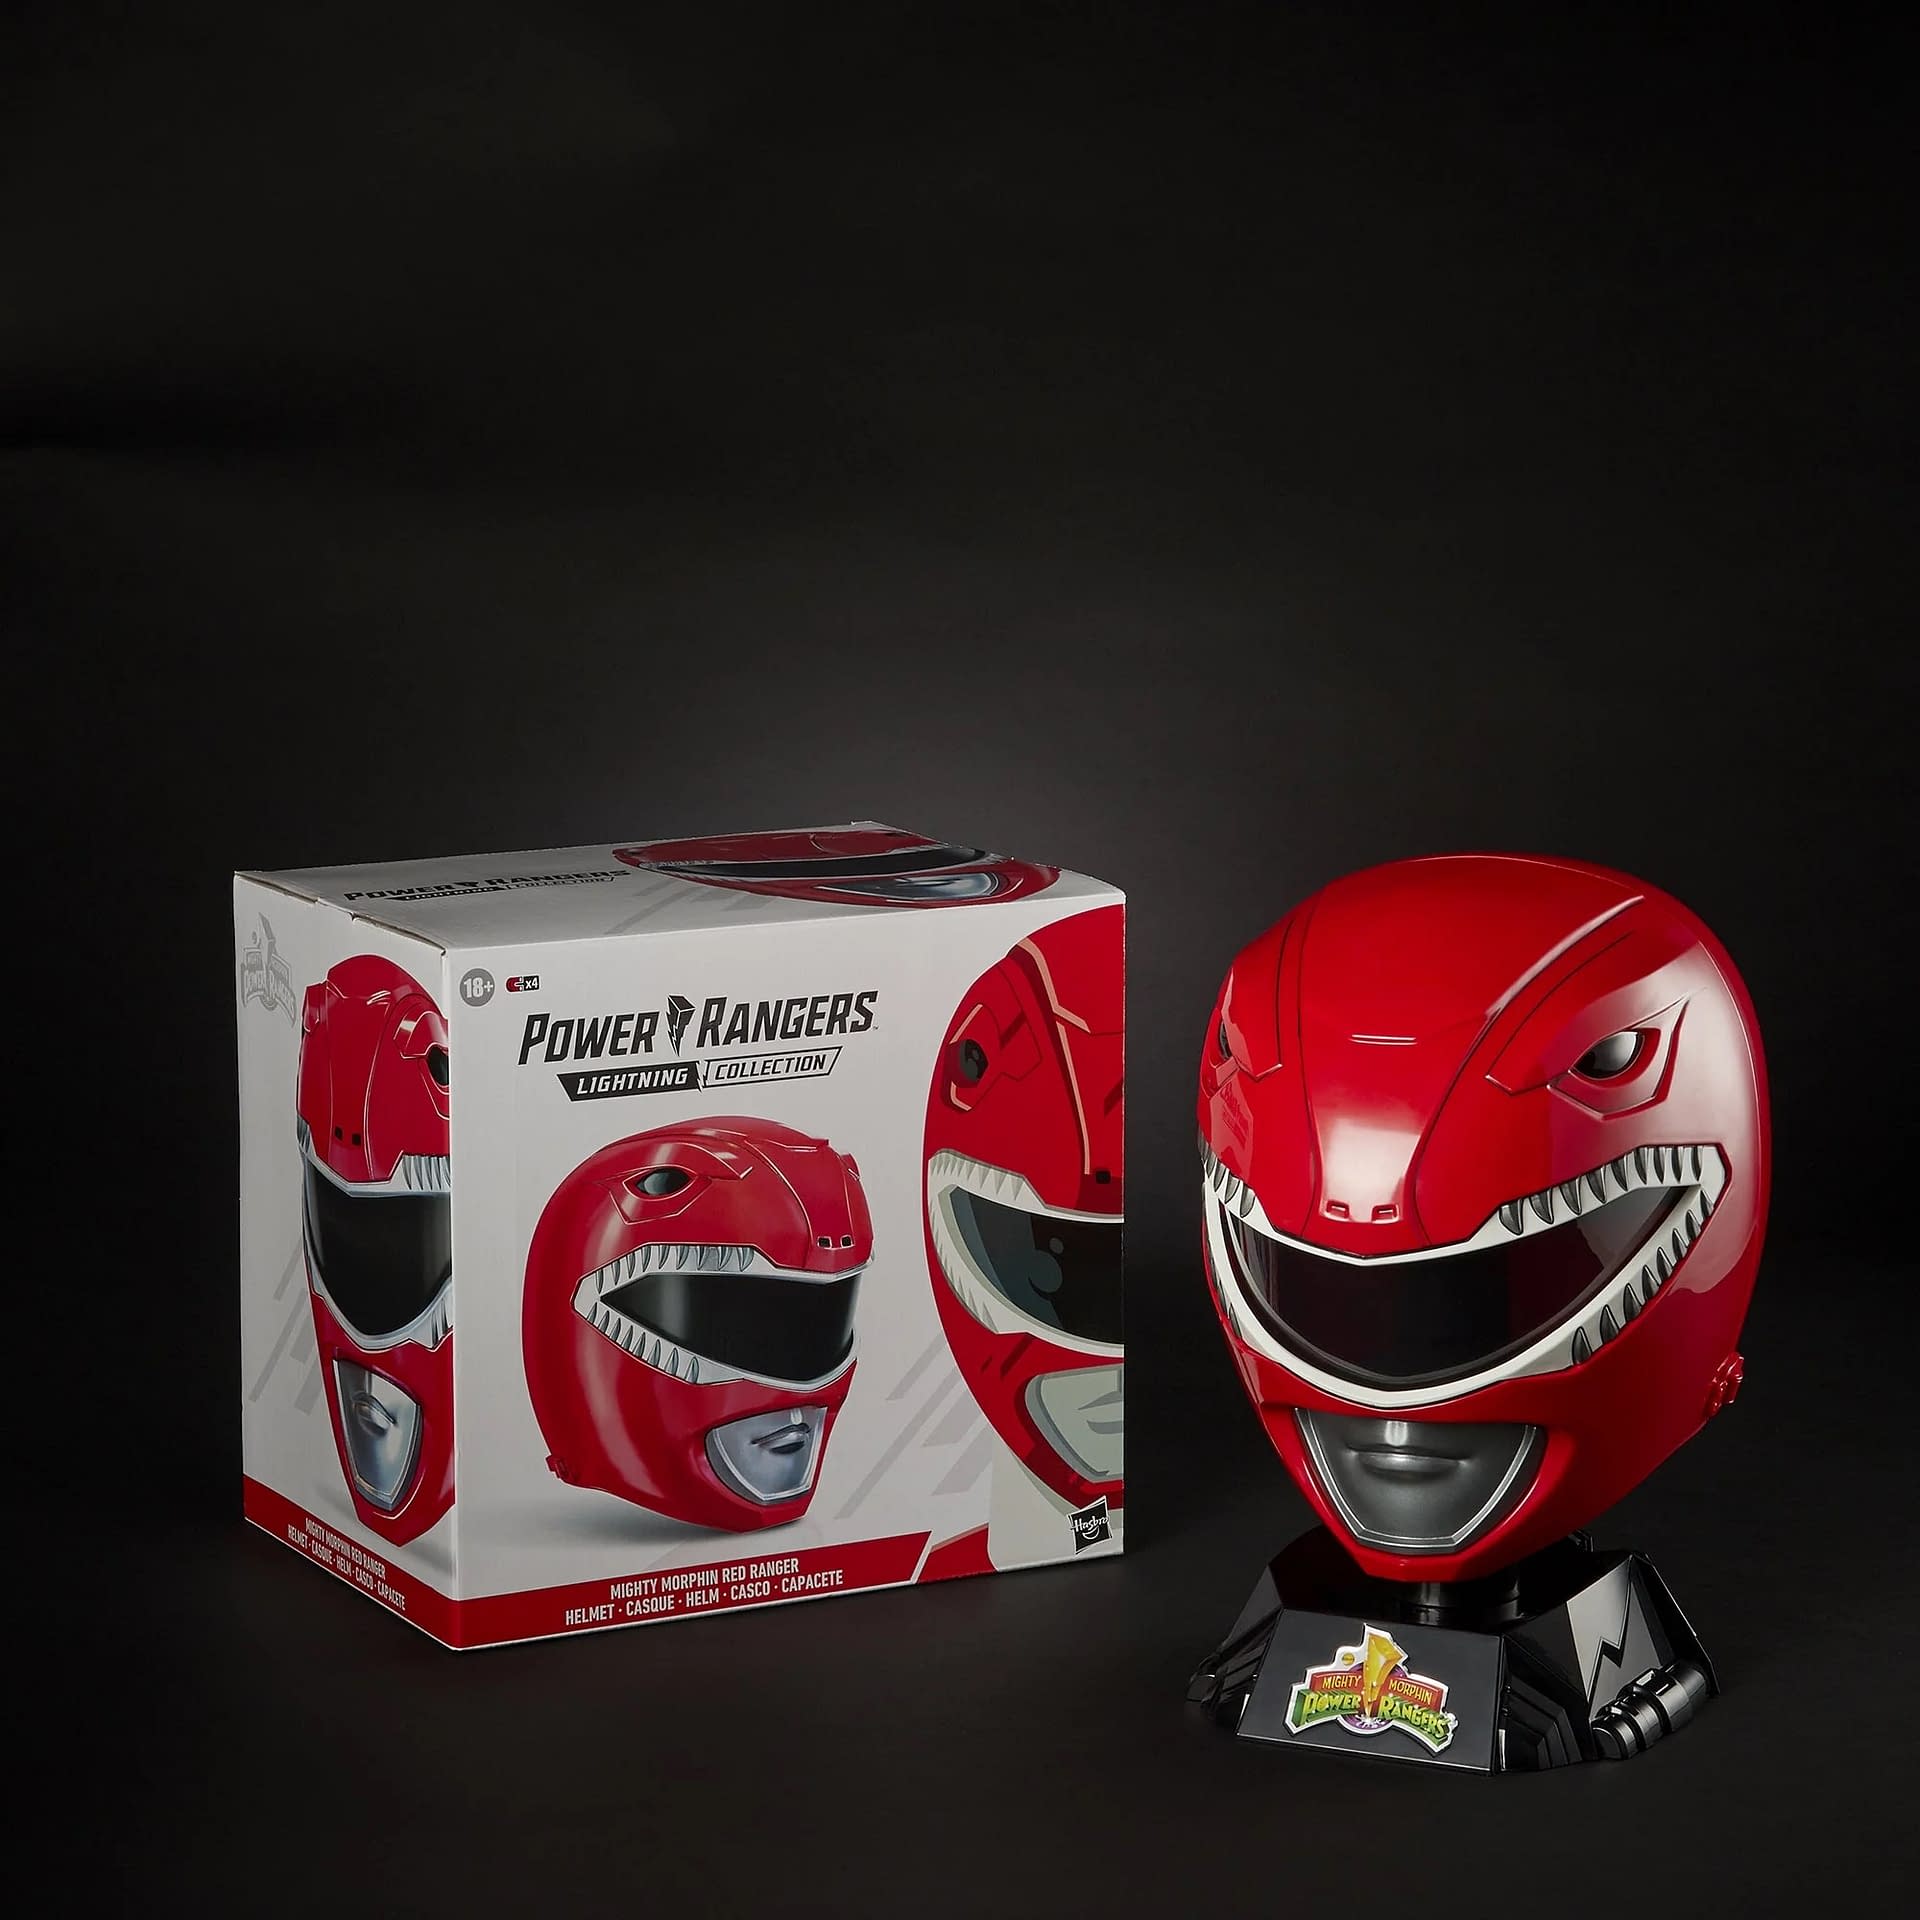 Power Rangers Red Ranger 1:1 Replica Helmet Returns to Hasbro 